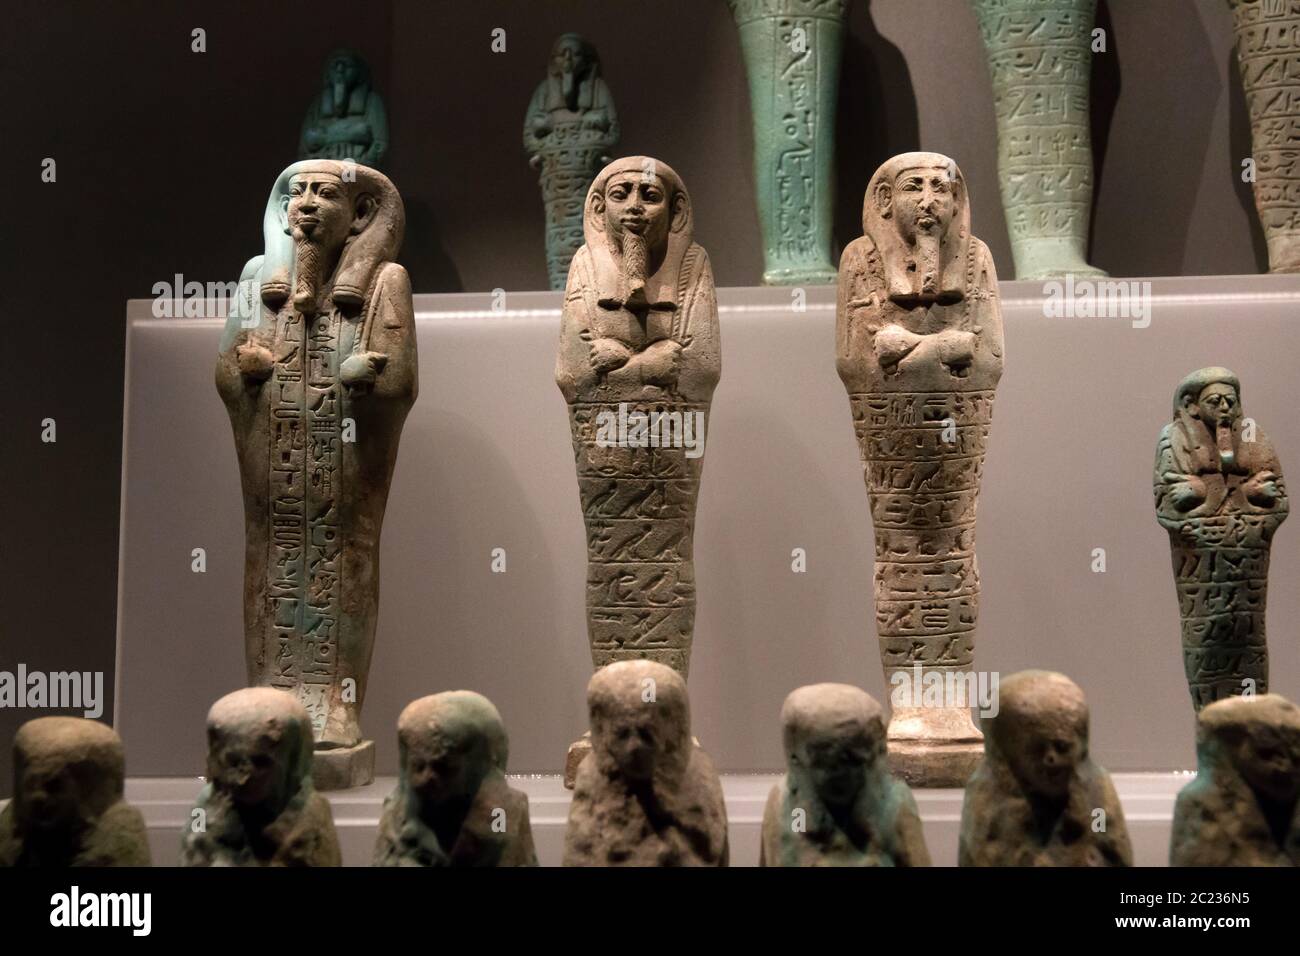 Leiden, pays-Bas 26 JANVIER 2019 : figurines en petits shabti mommiformes anciennes en pierre à l'exposition Gods of Egypt à Leiden. Figurines funéraires. Banque D'Images